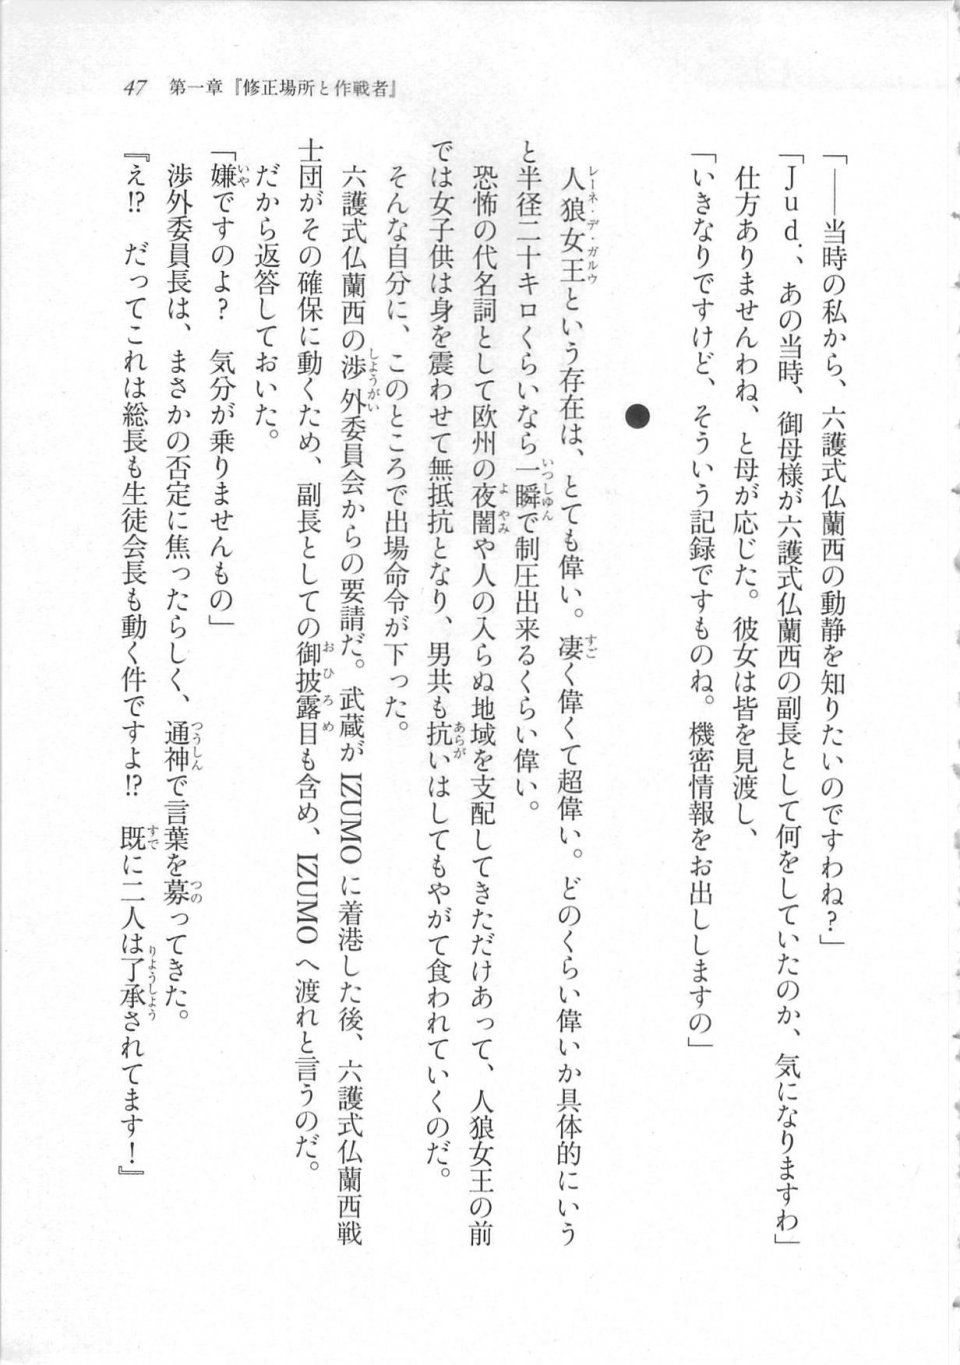 Kyoukai Senjou no Horizon LN Sidestory Vol 3 - Photo #51